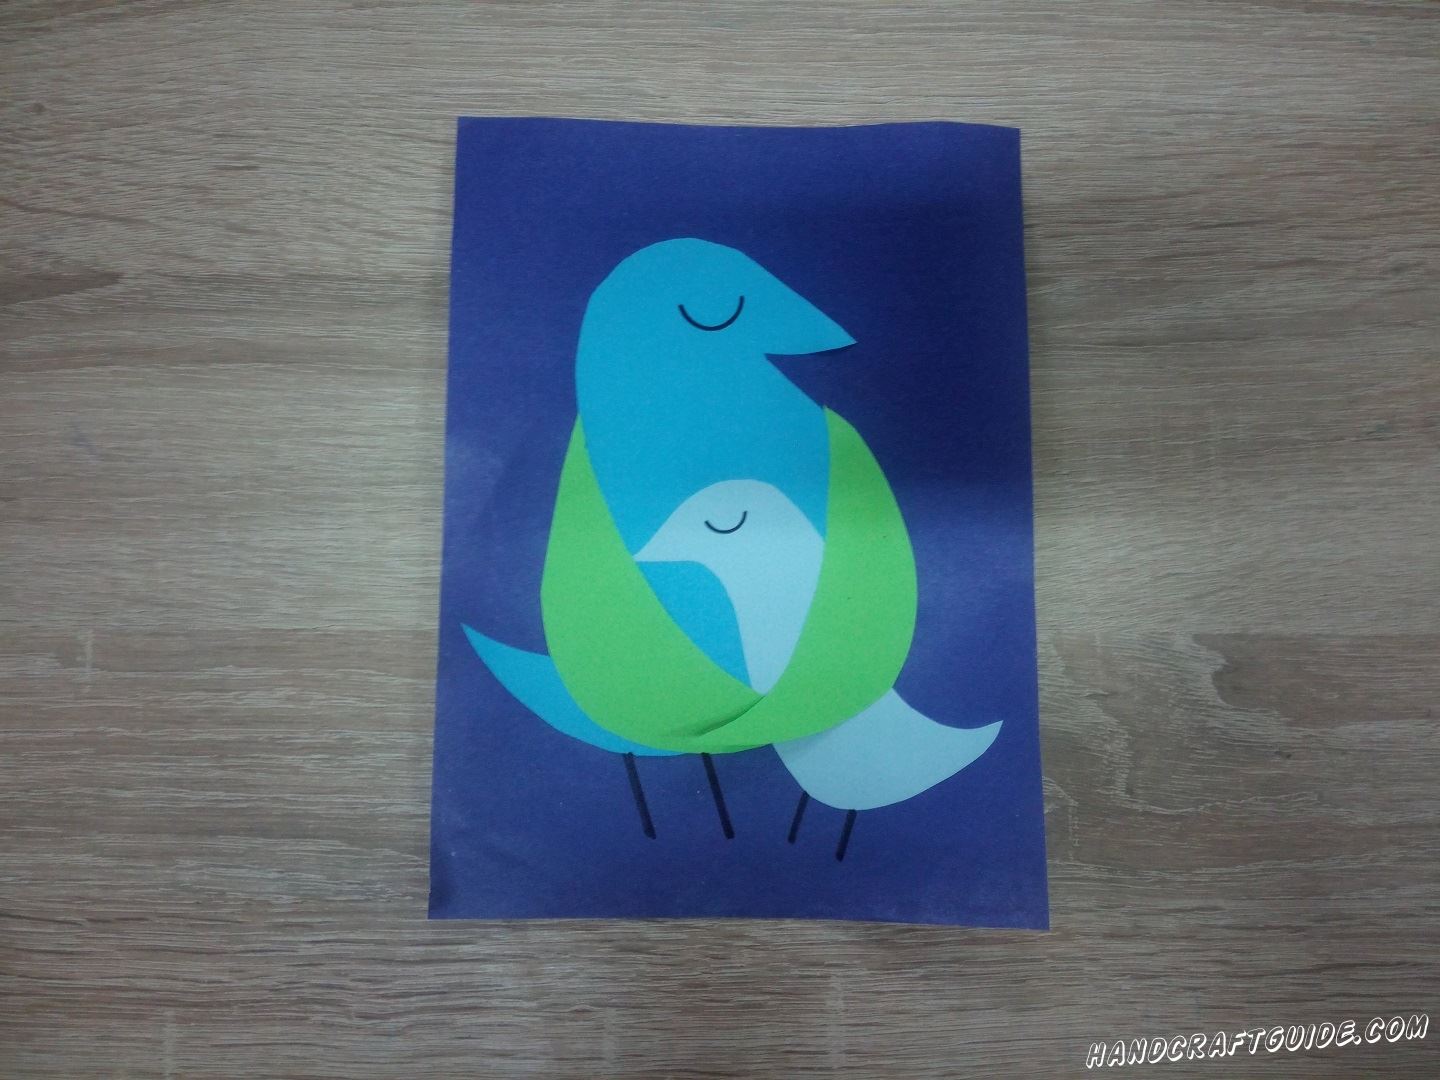 Давайте сделаем замечательную поделку с птичками из цветной бумаги, прямо сейчас.